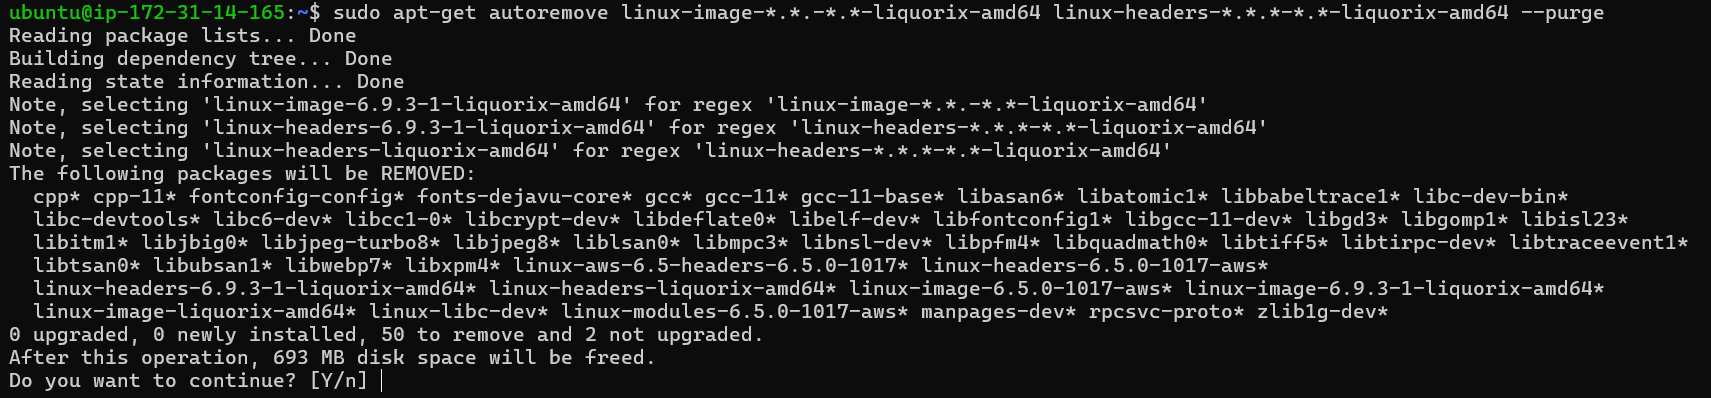 How to Install Liquorix Kernel on Ubuntu 22.04